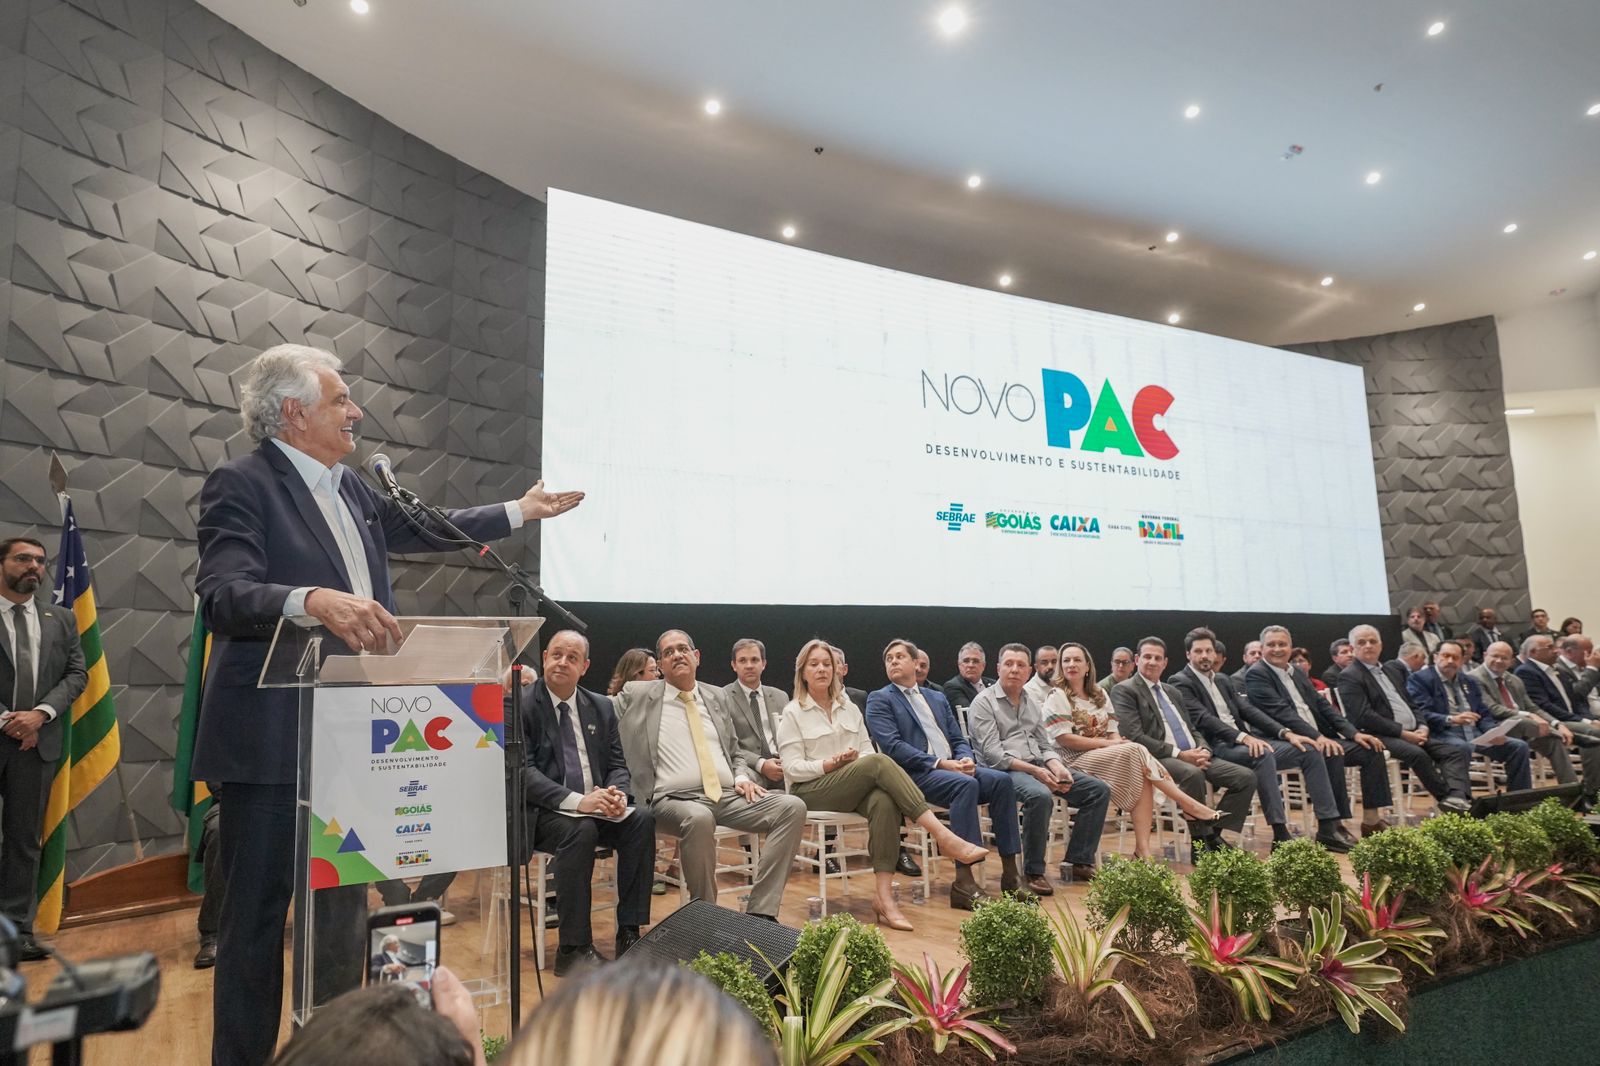 No lançamento do Novo PAC em Goiás, Caiado ressalta importância de parceria com o governo federal para levar mais benefícios aos goianos 